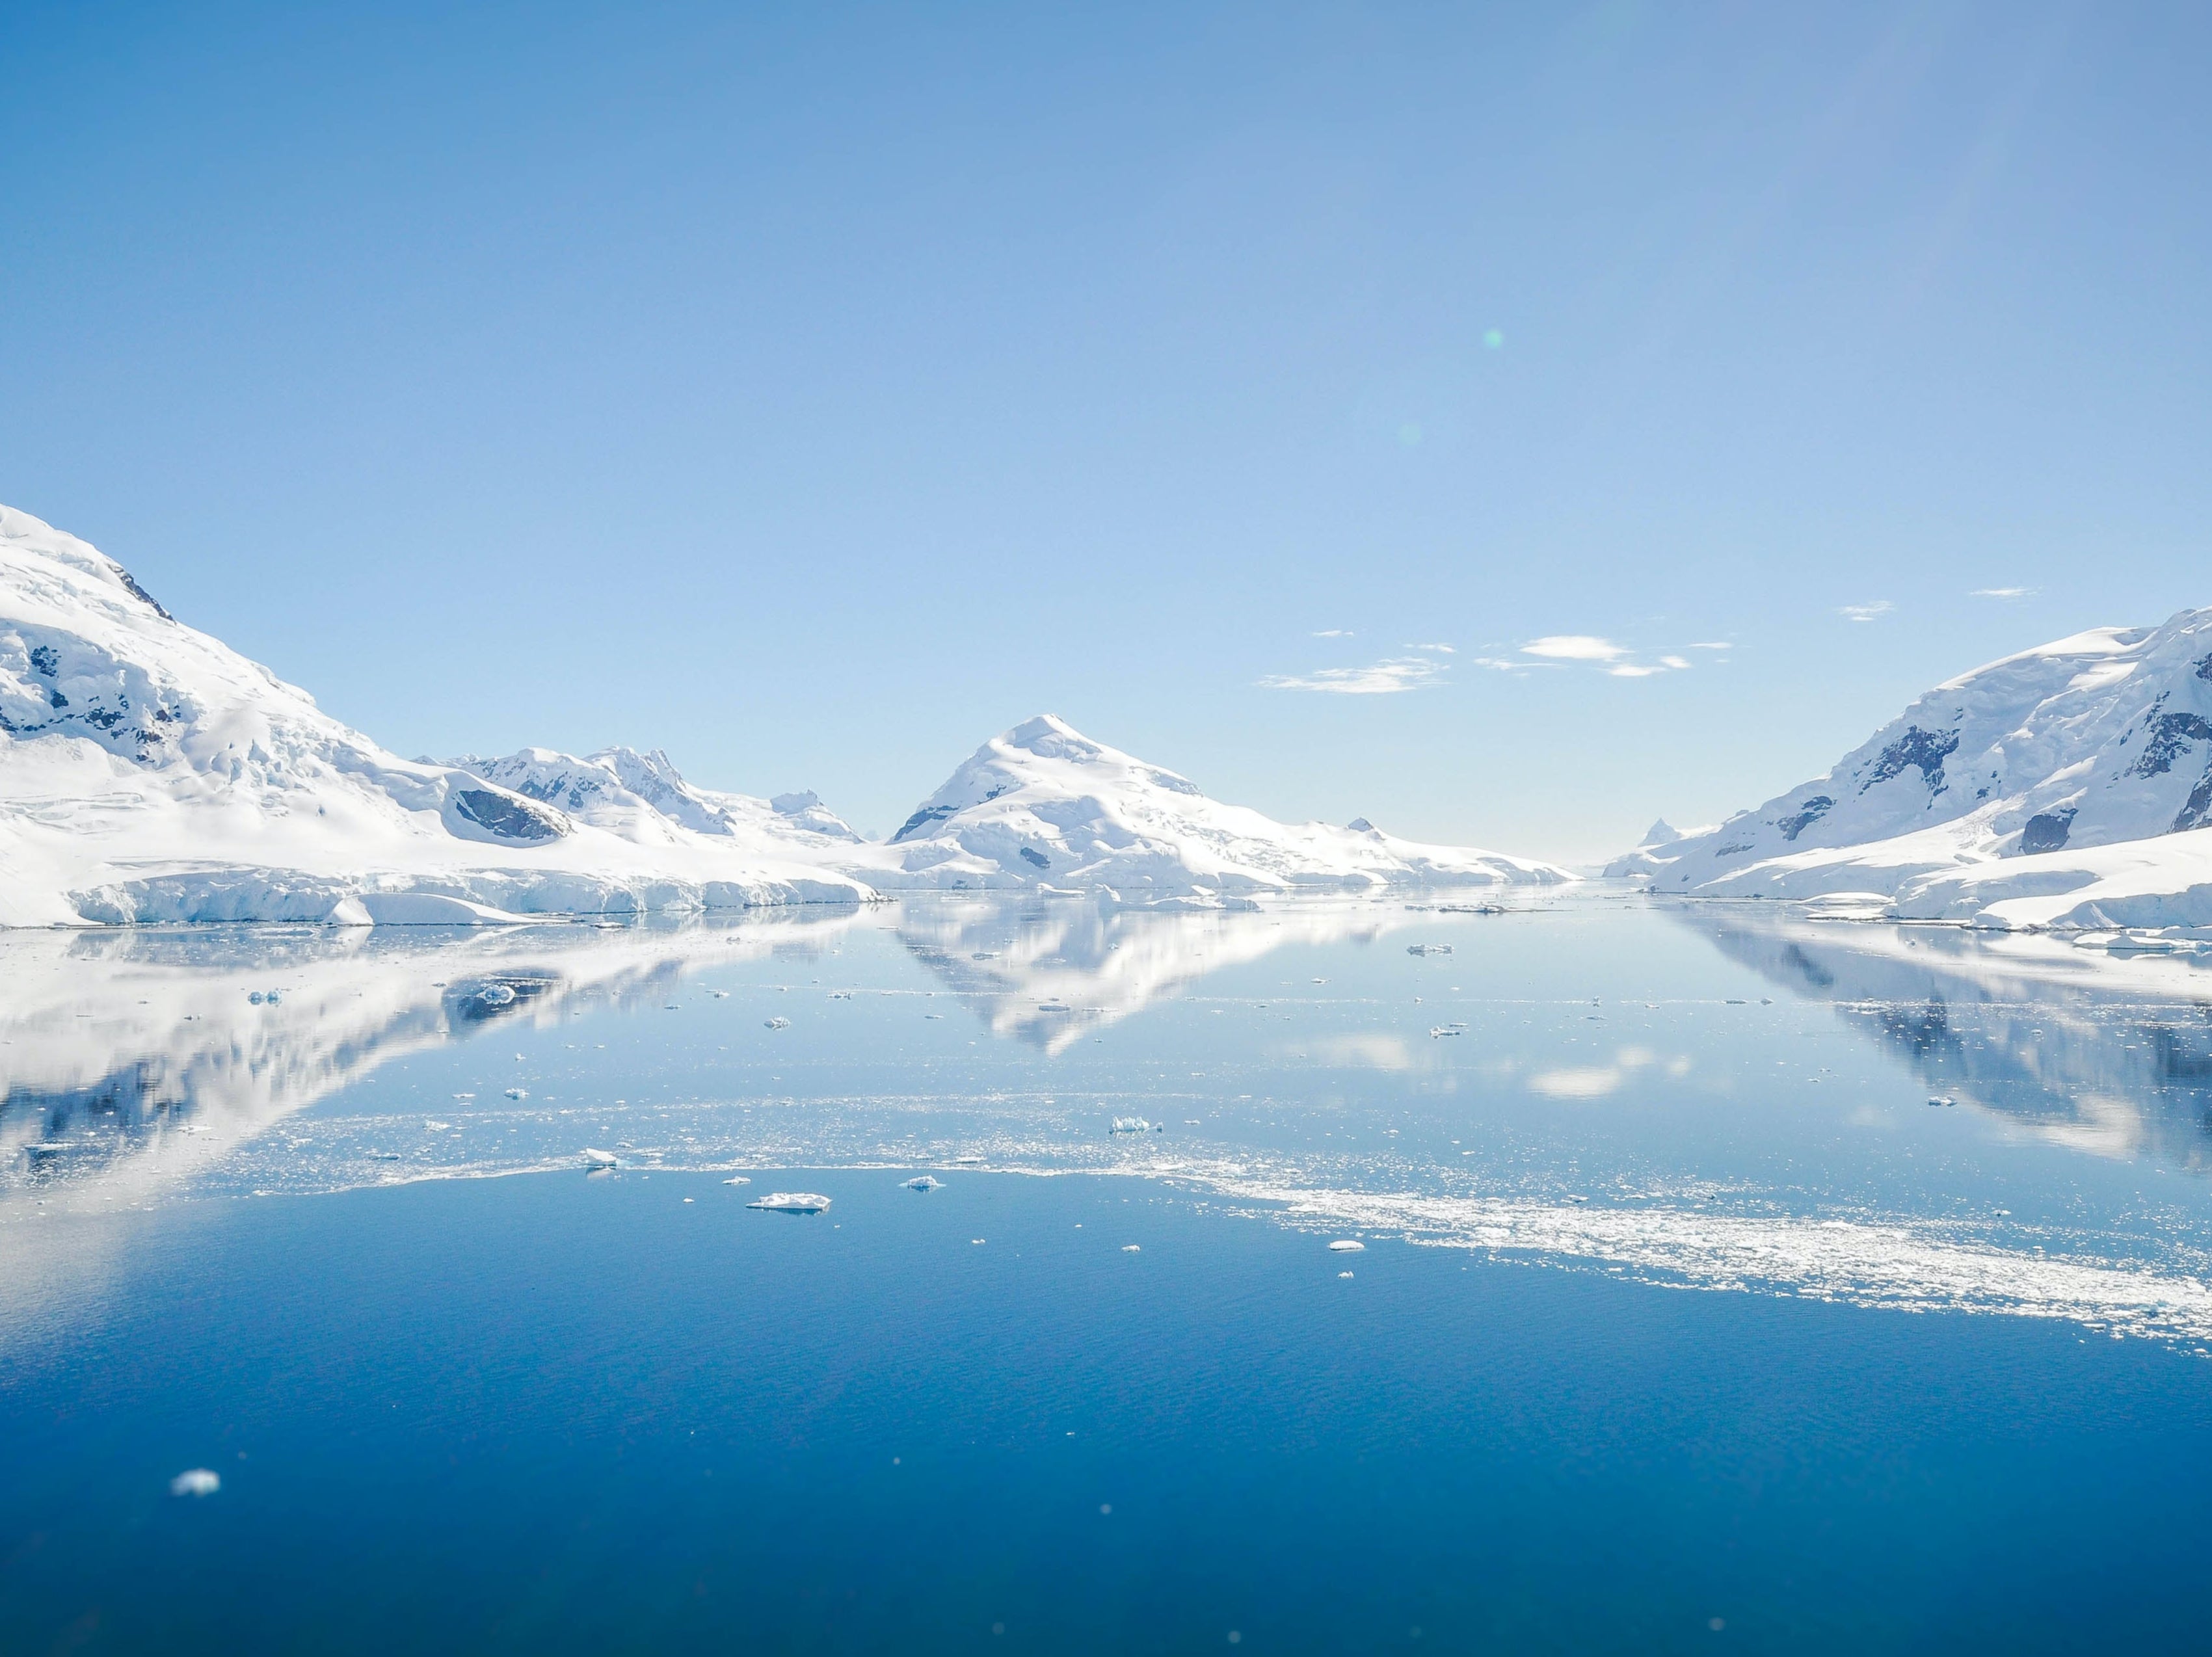 Antarctica has seen a huge uptick in visitors